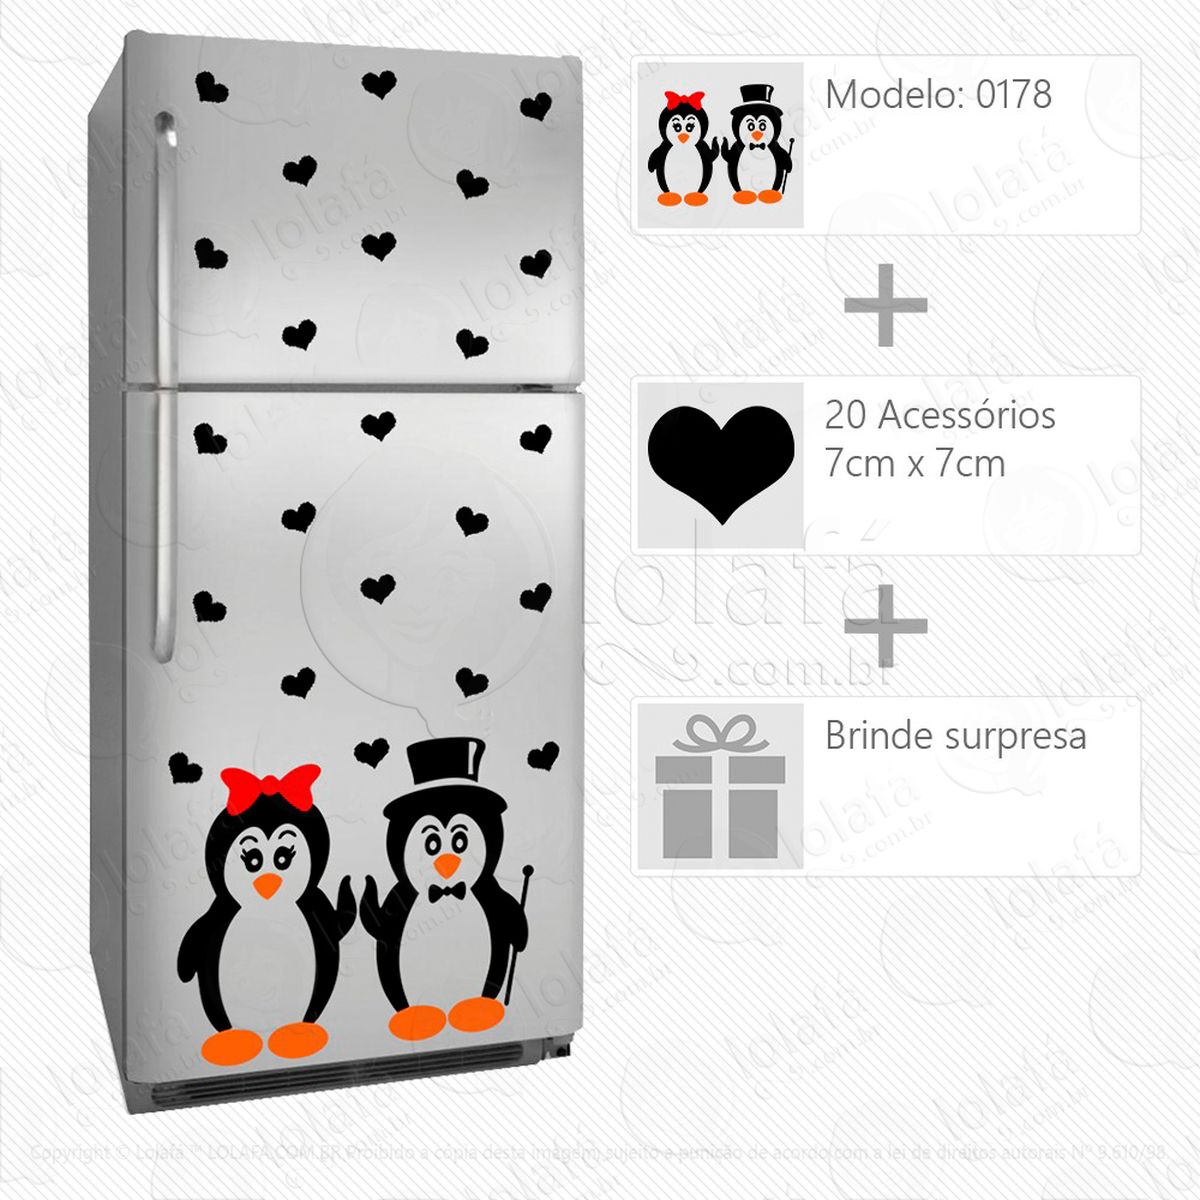 pinguins adesivo para geladeira e frigobar - mod:178